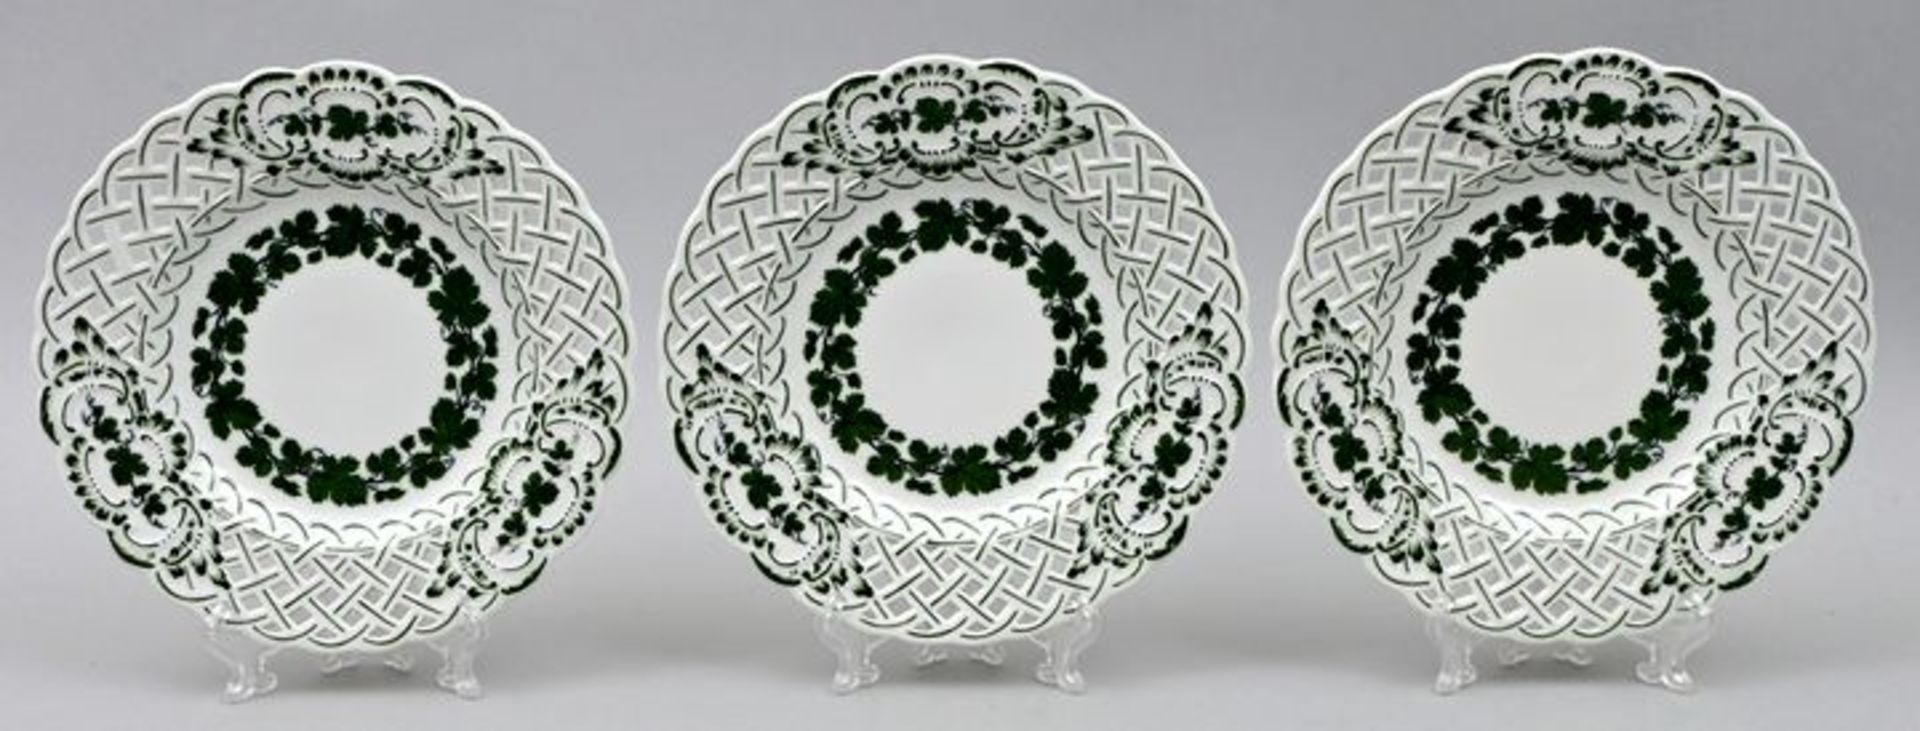 Gebäckteller, Meissen / Porcelain plates, Meissen